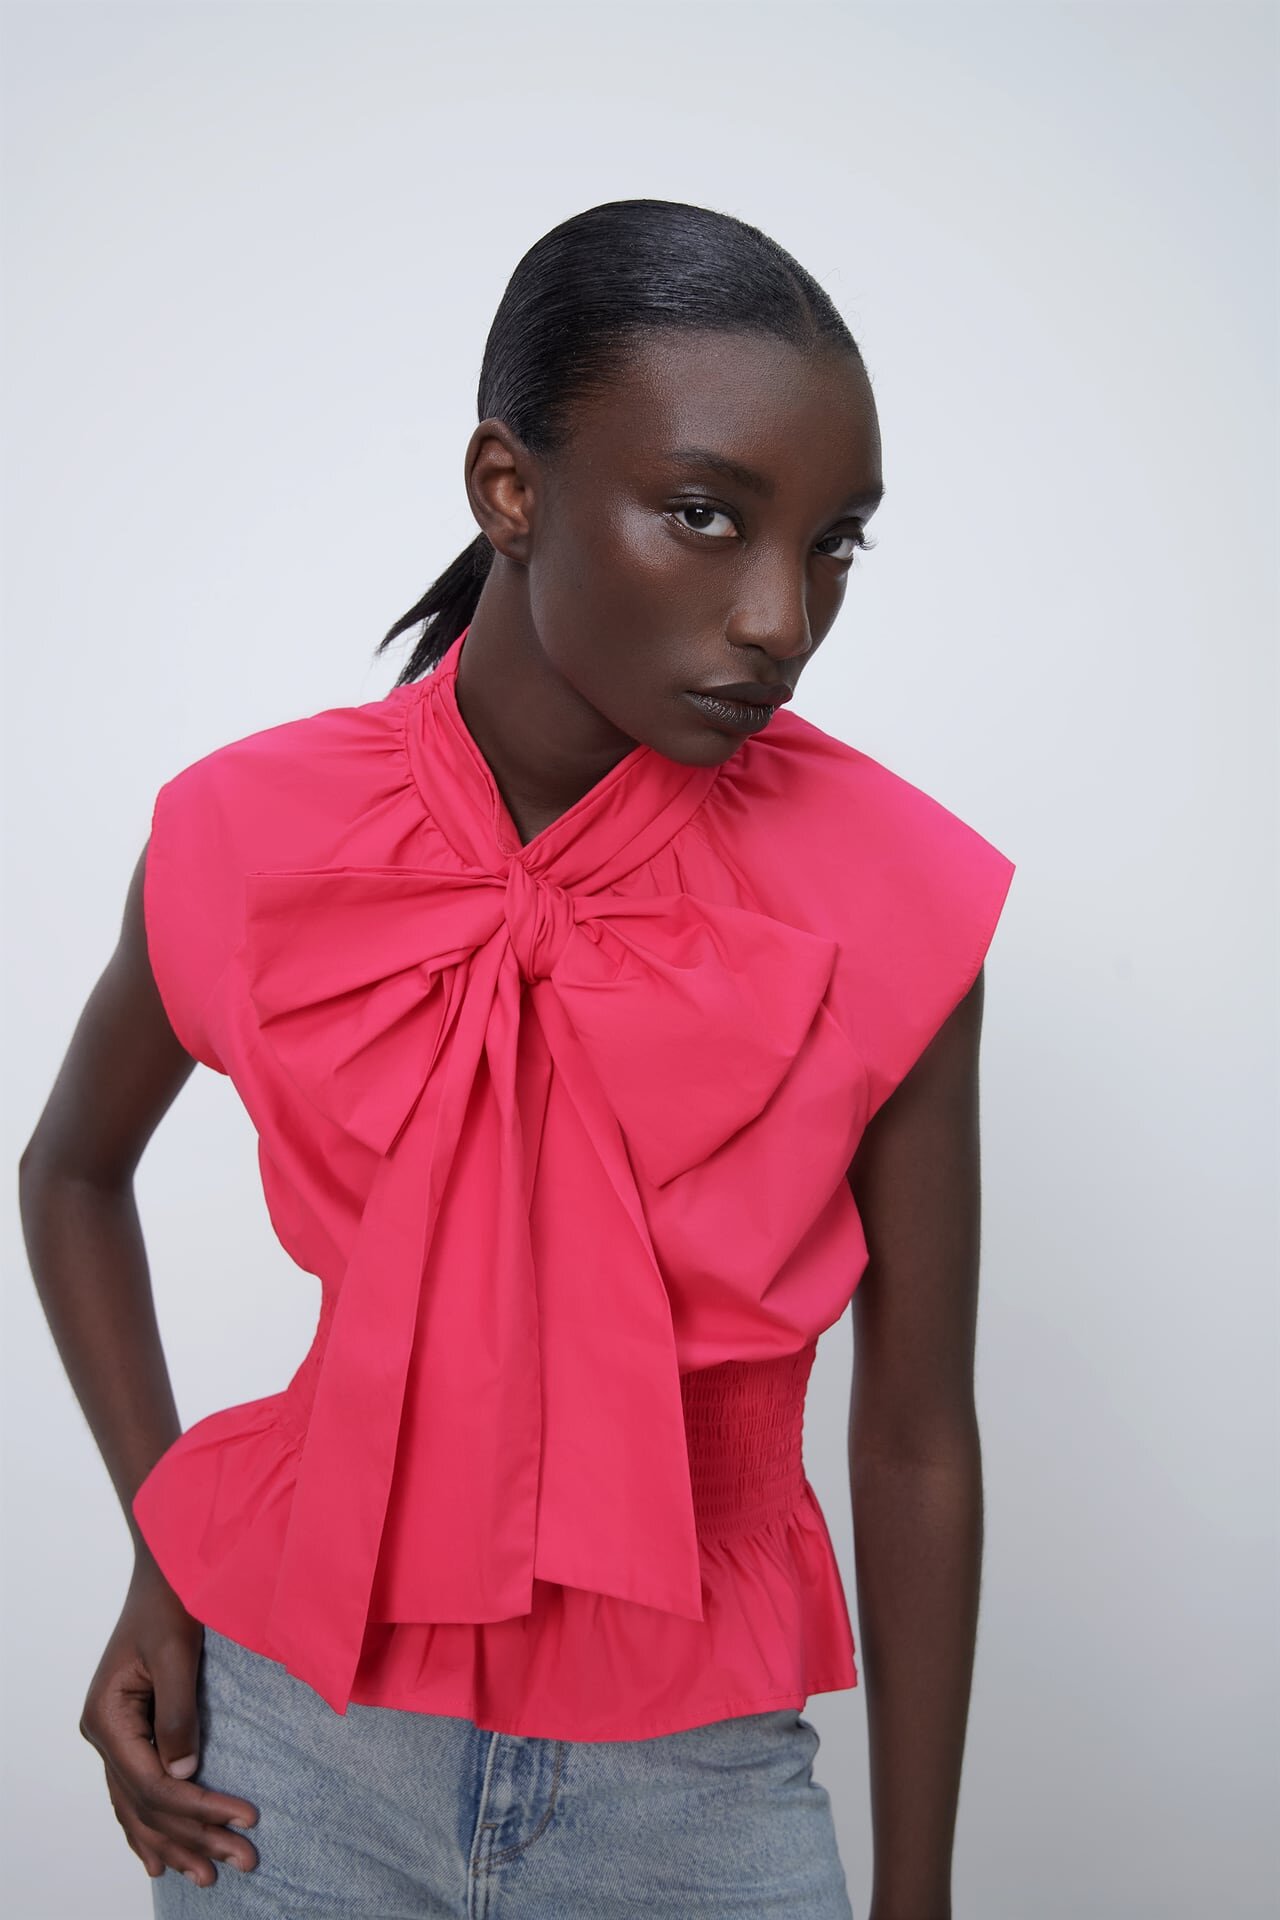 Zara pink top.jpg